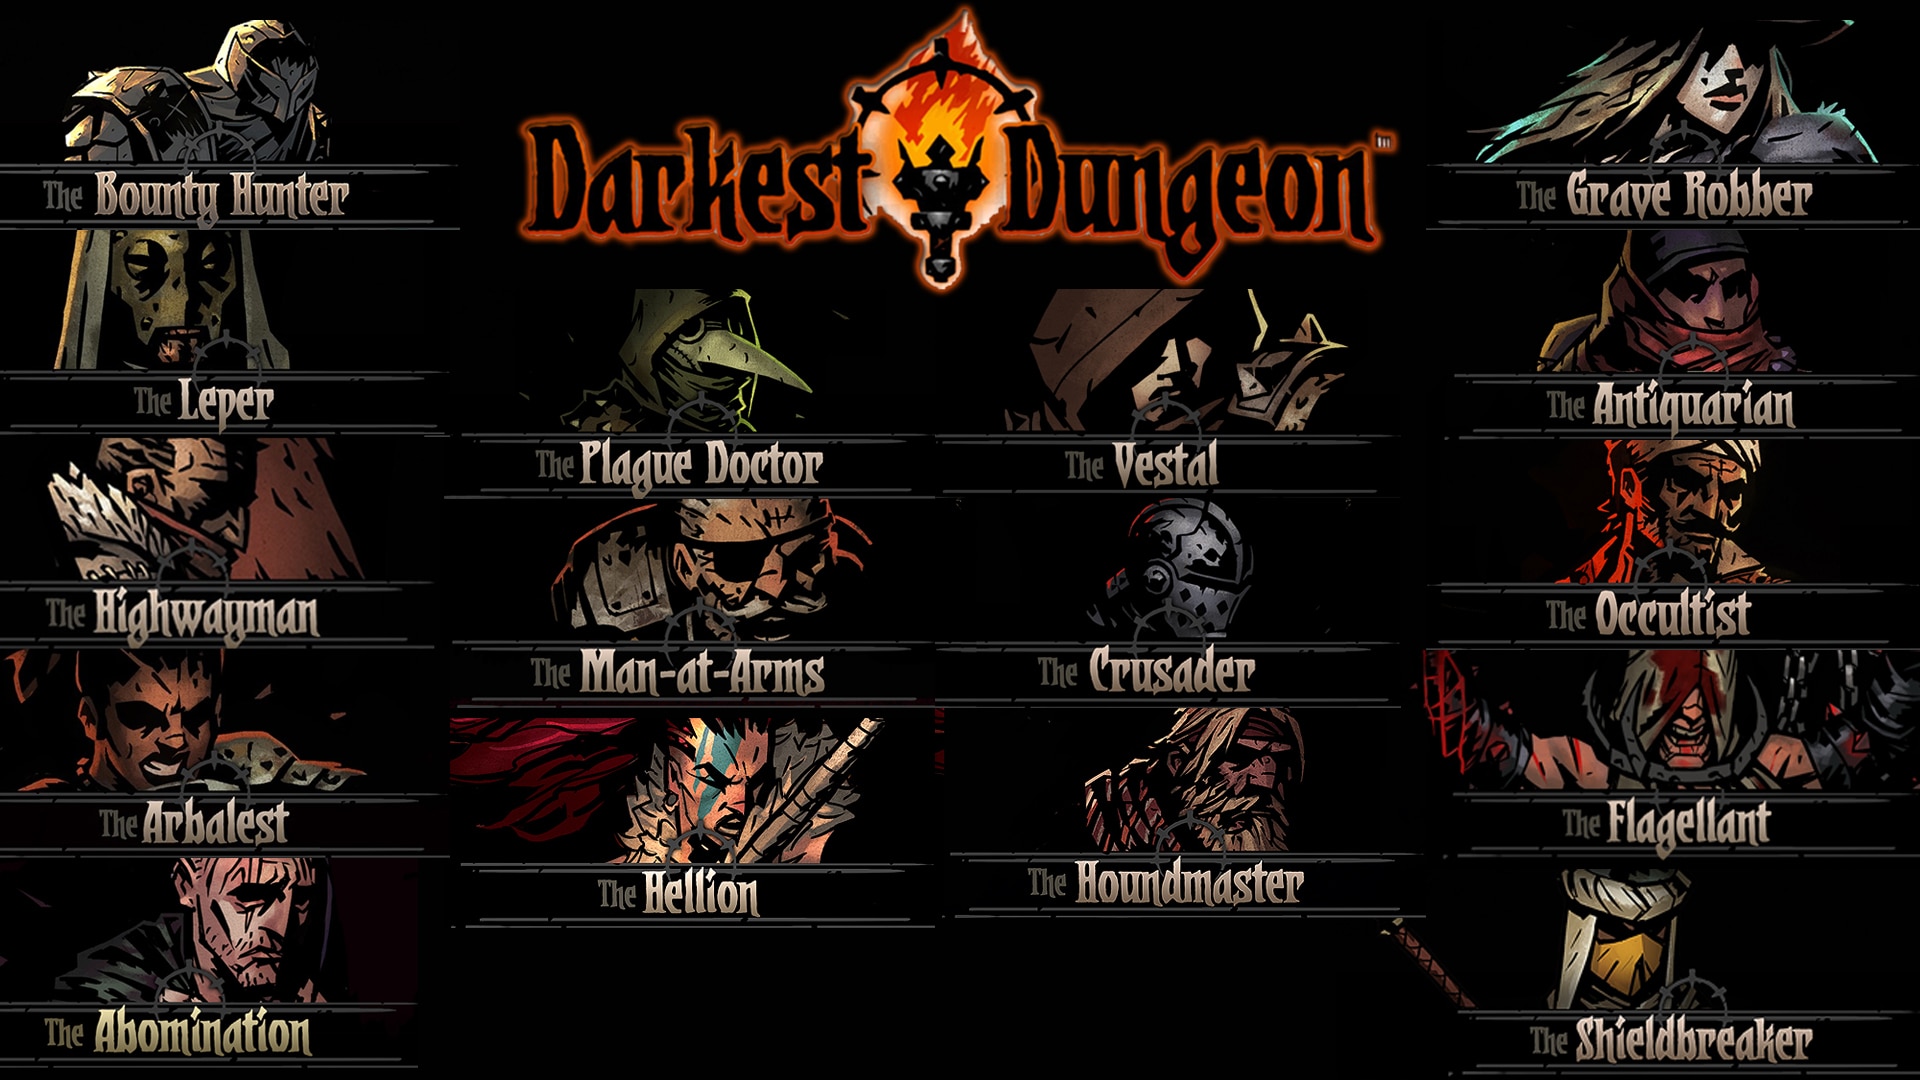 Steam Muhely Darkest Dungeon Best Mods And Skins